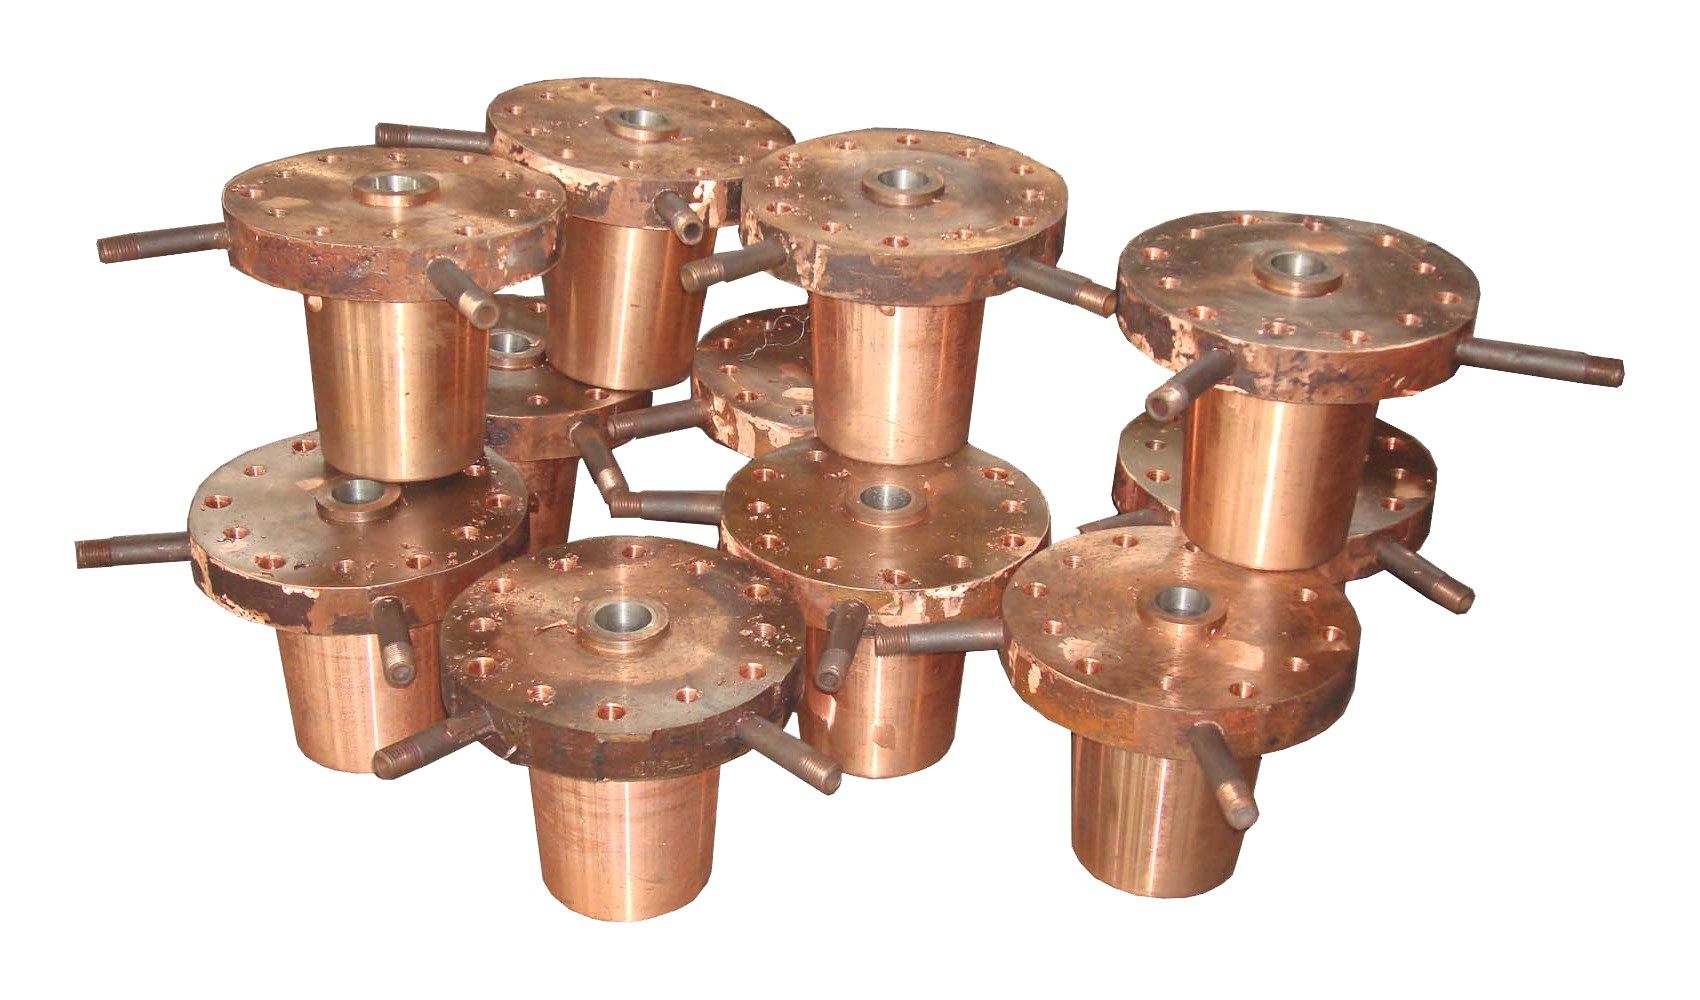 Copper cooling burner of side-blown furnace